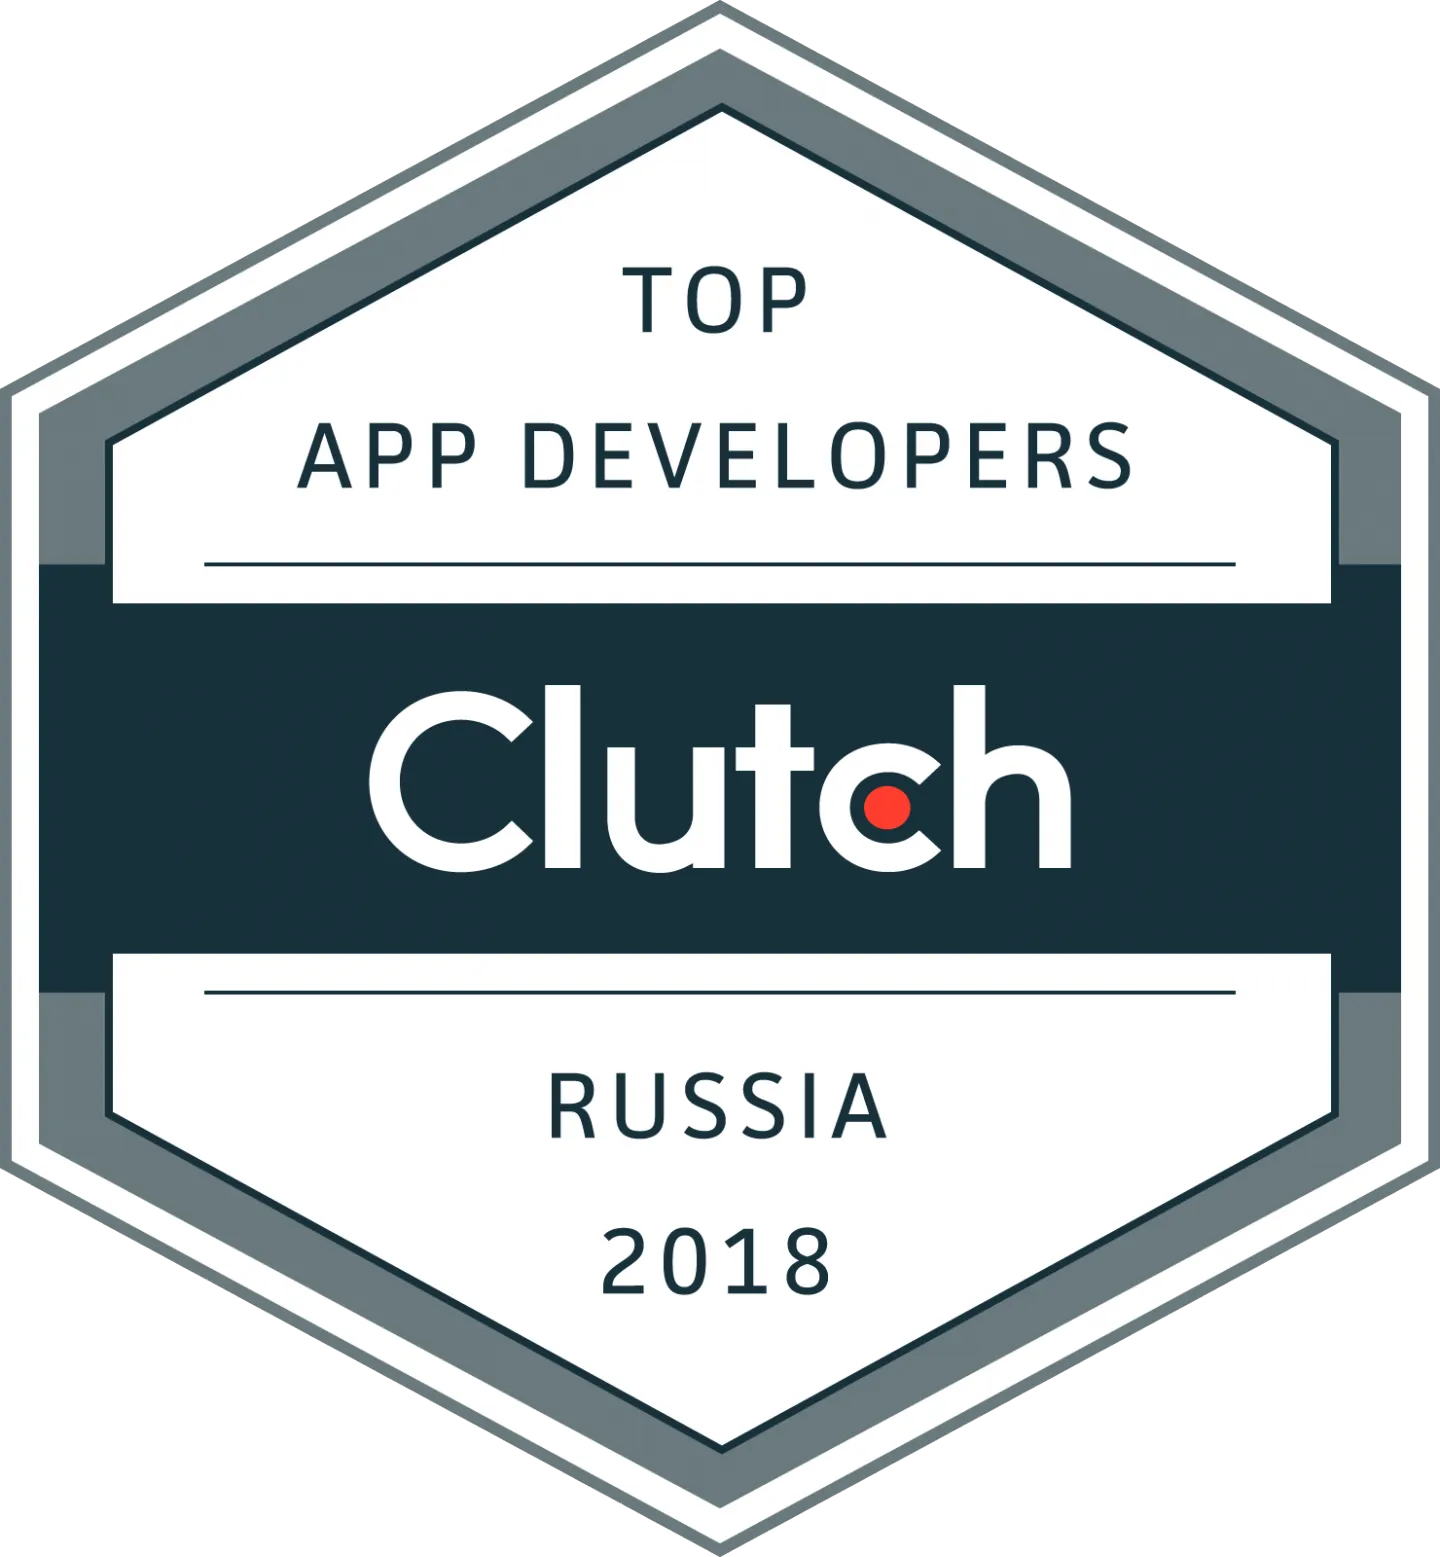 Top app developers 2018